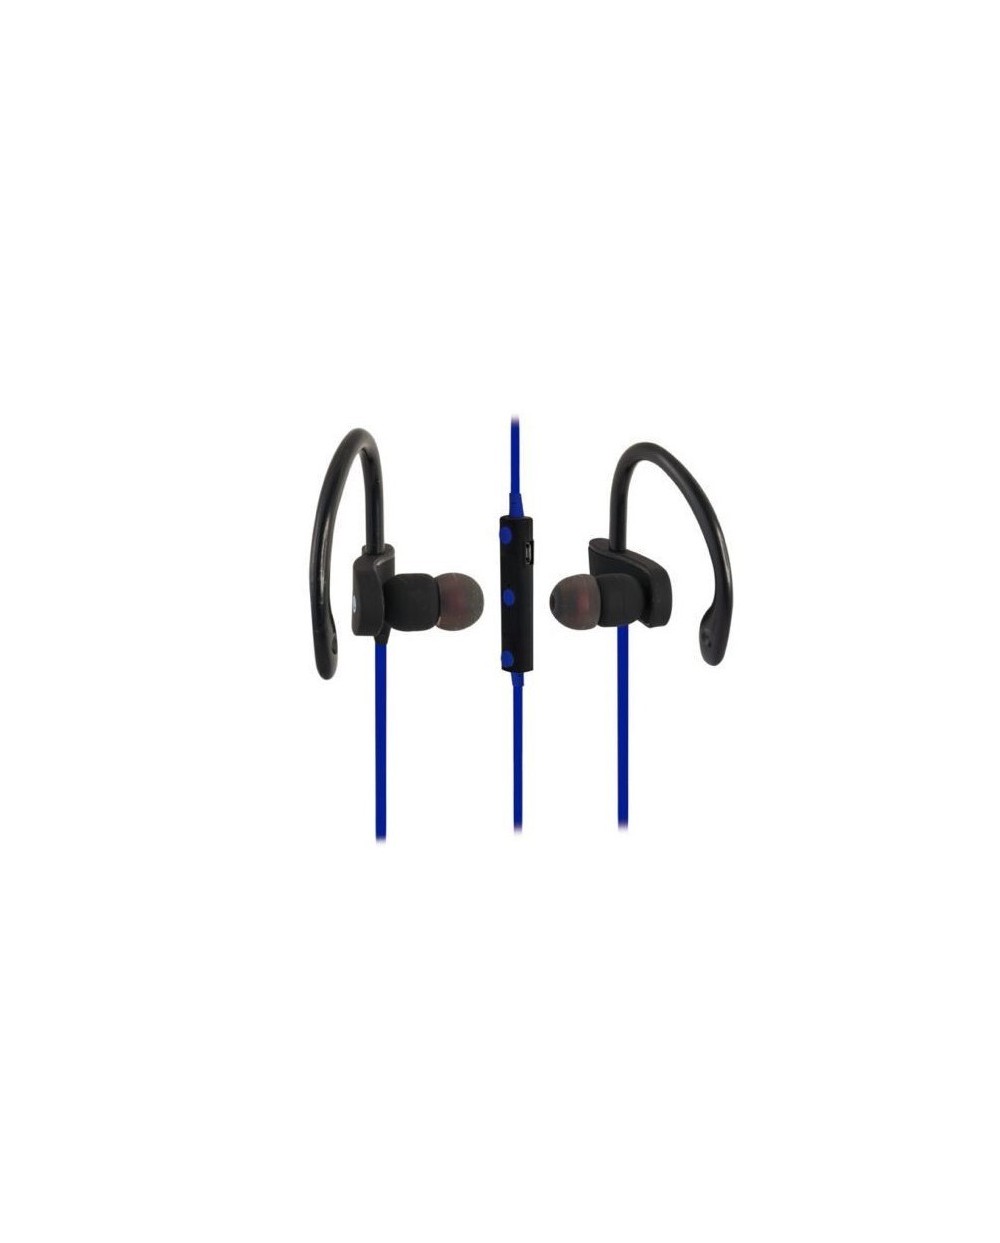 Ασύρματα Bluetooth Ακουστικά Handsfree με Ρυθμιζόμενο Άγκιστρο EZRA EZ-4 Μπλε